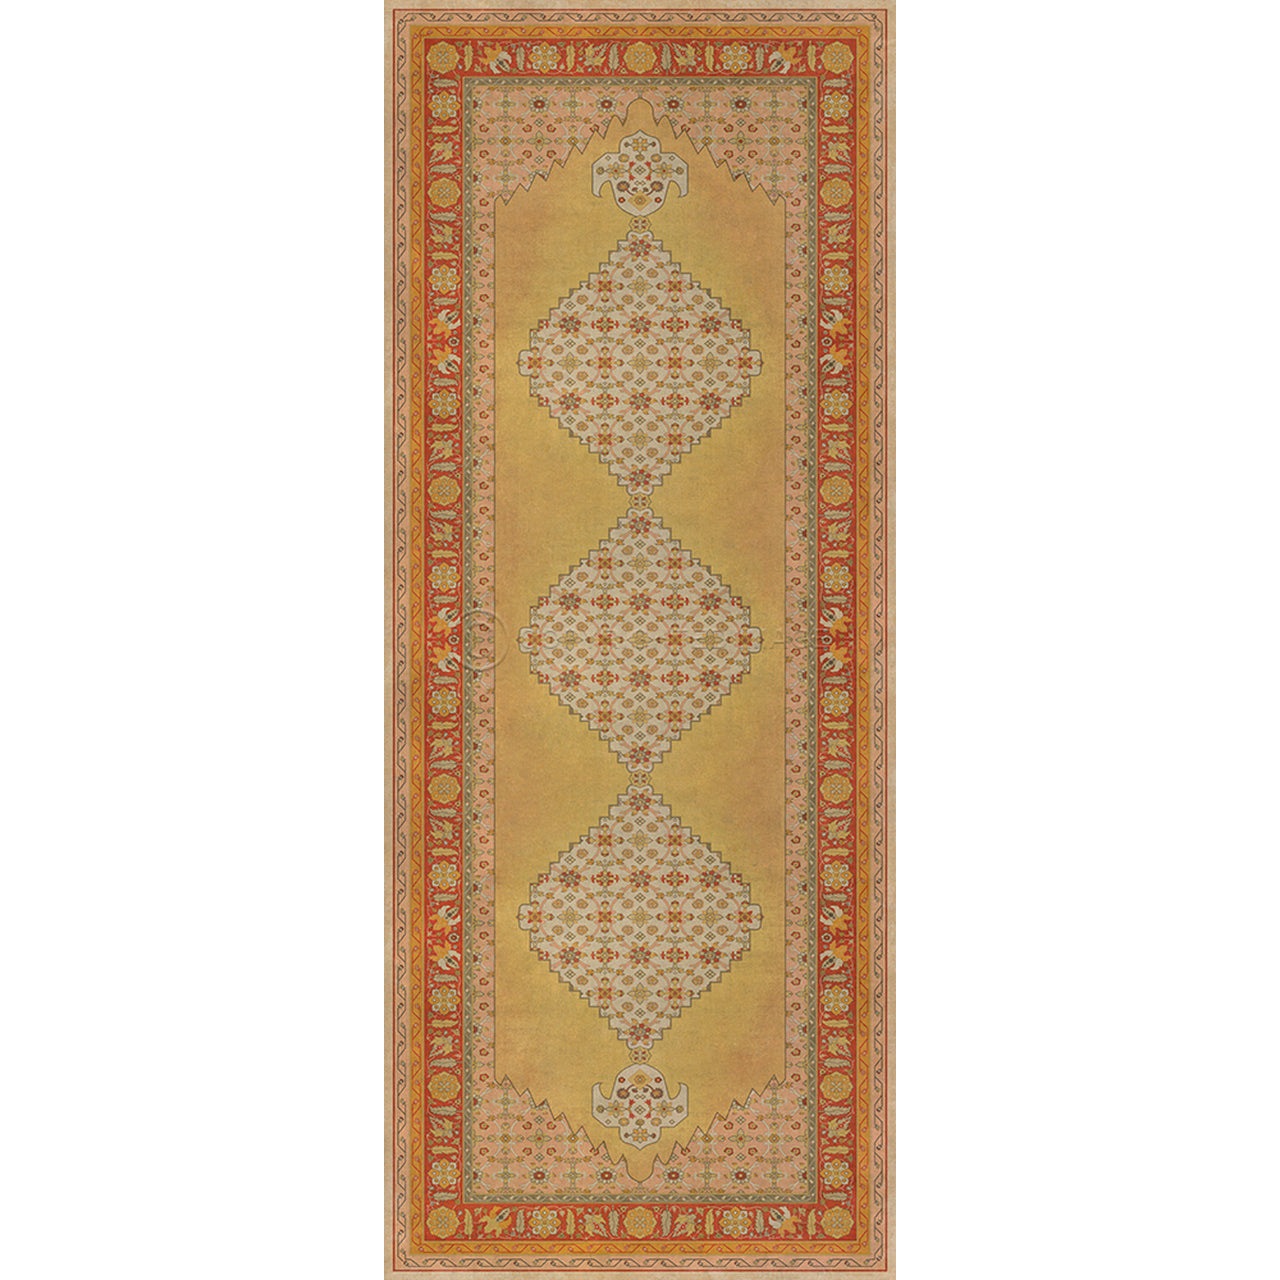 Persian Bazaar Agra Bishan Vinyl Floor Cloth